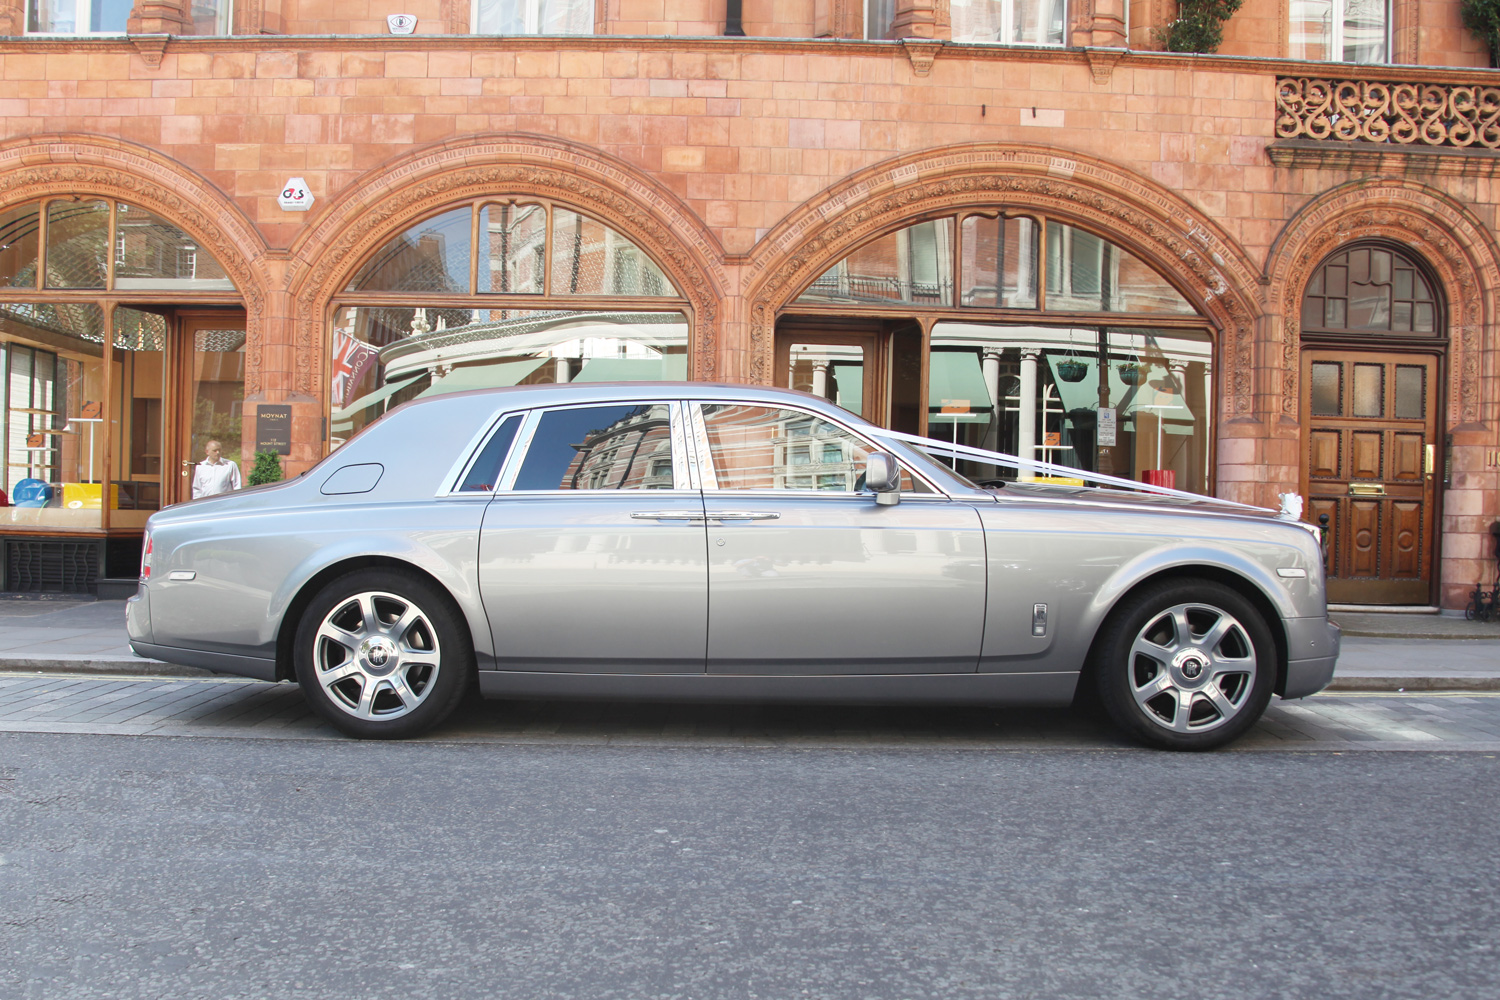 Rolls-Royce wedding car silver